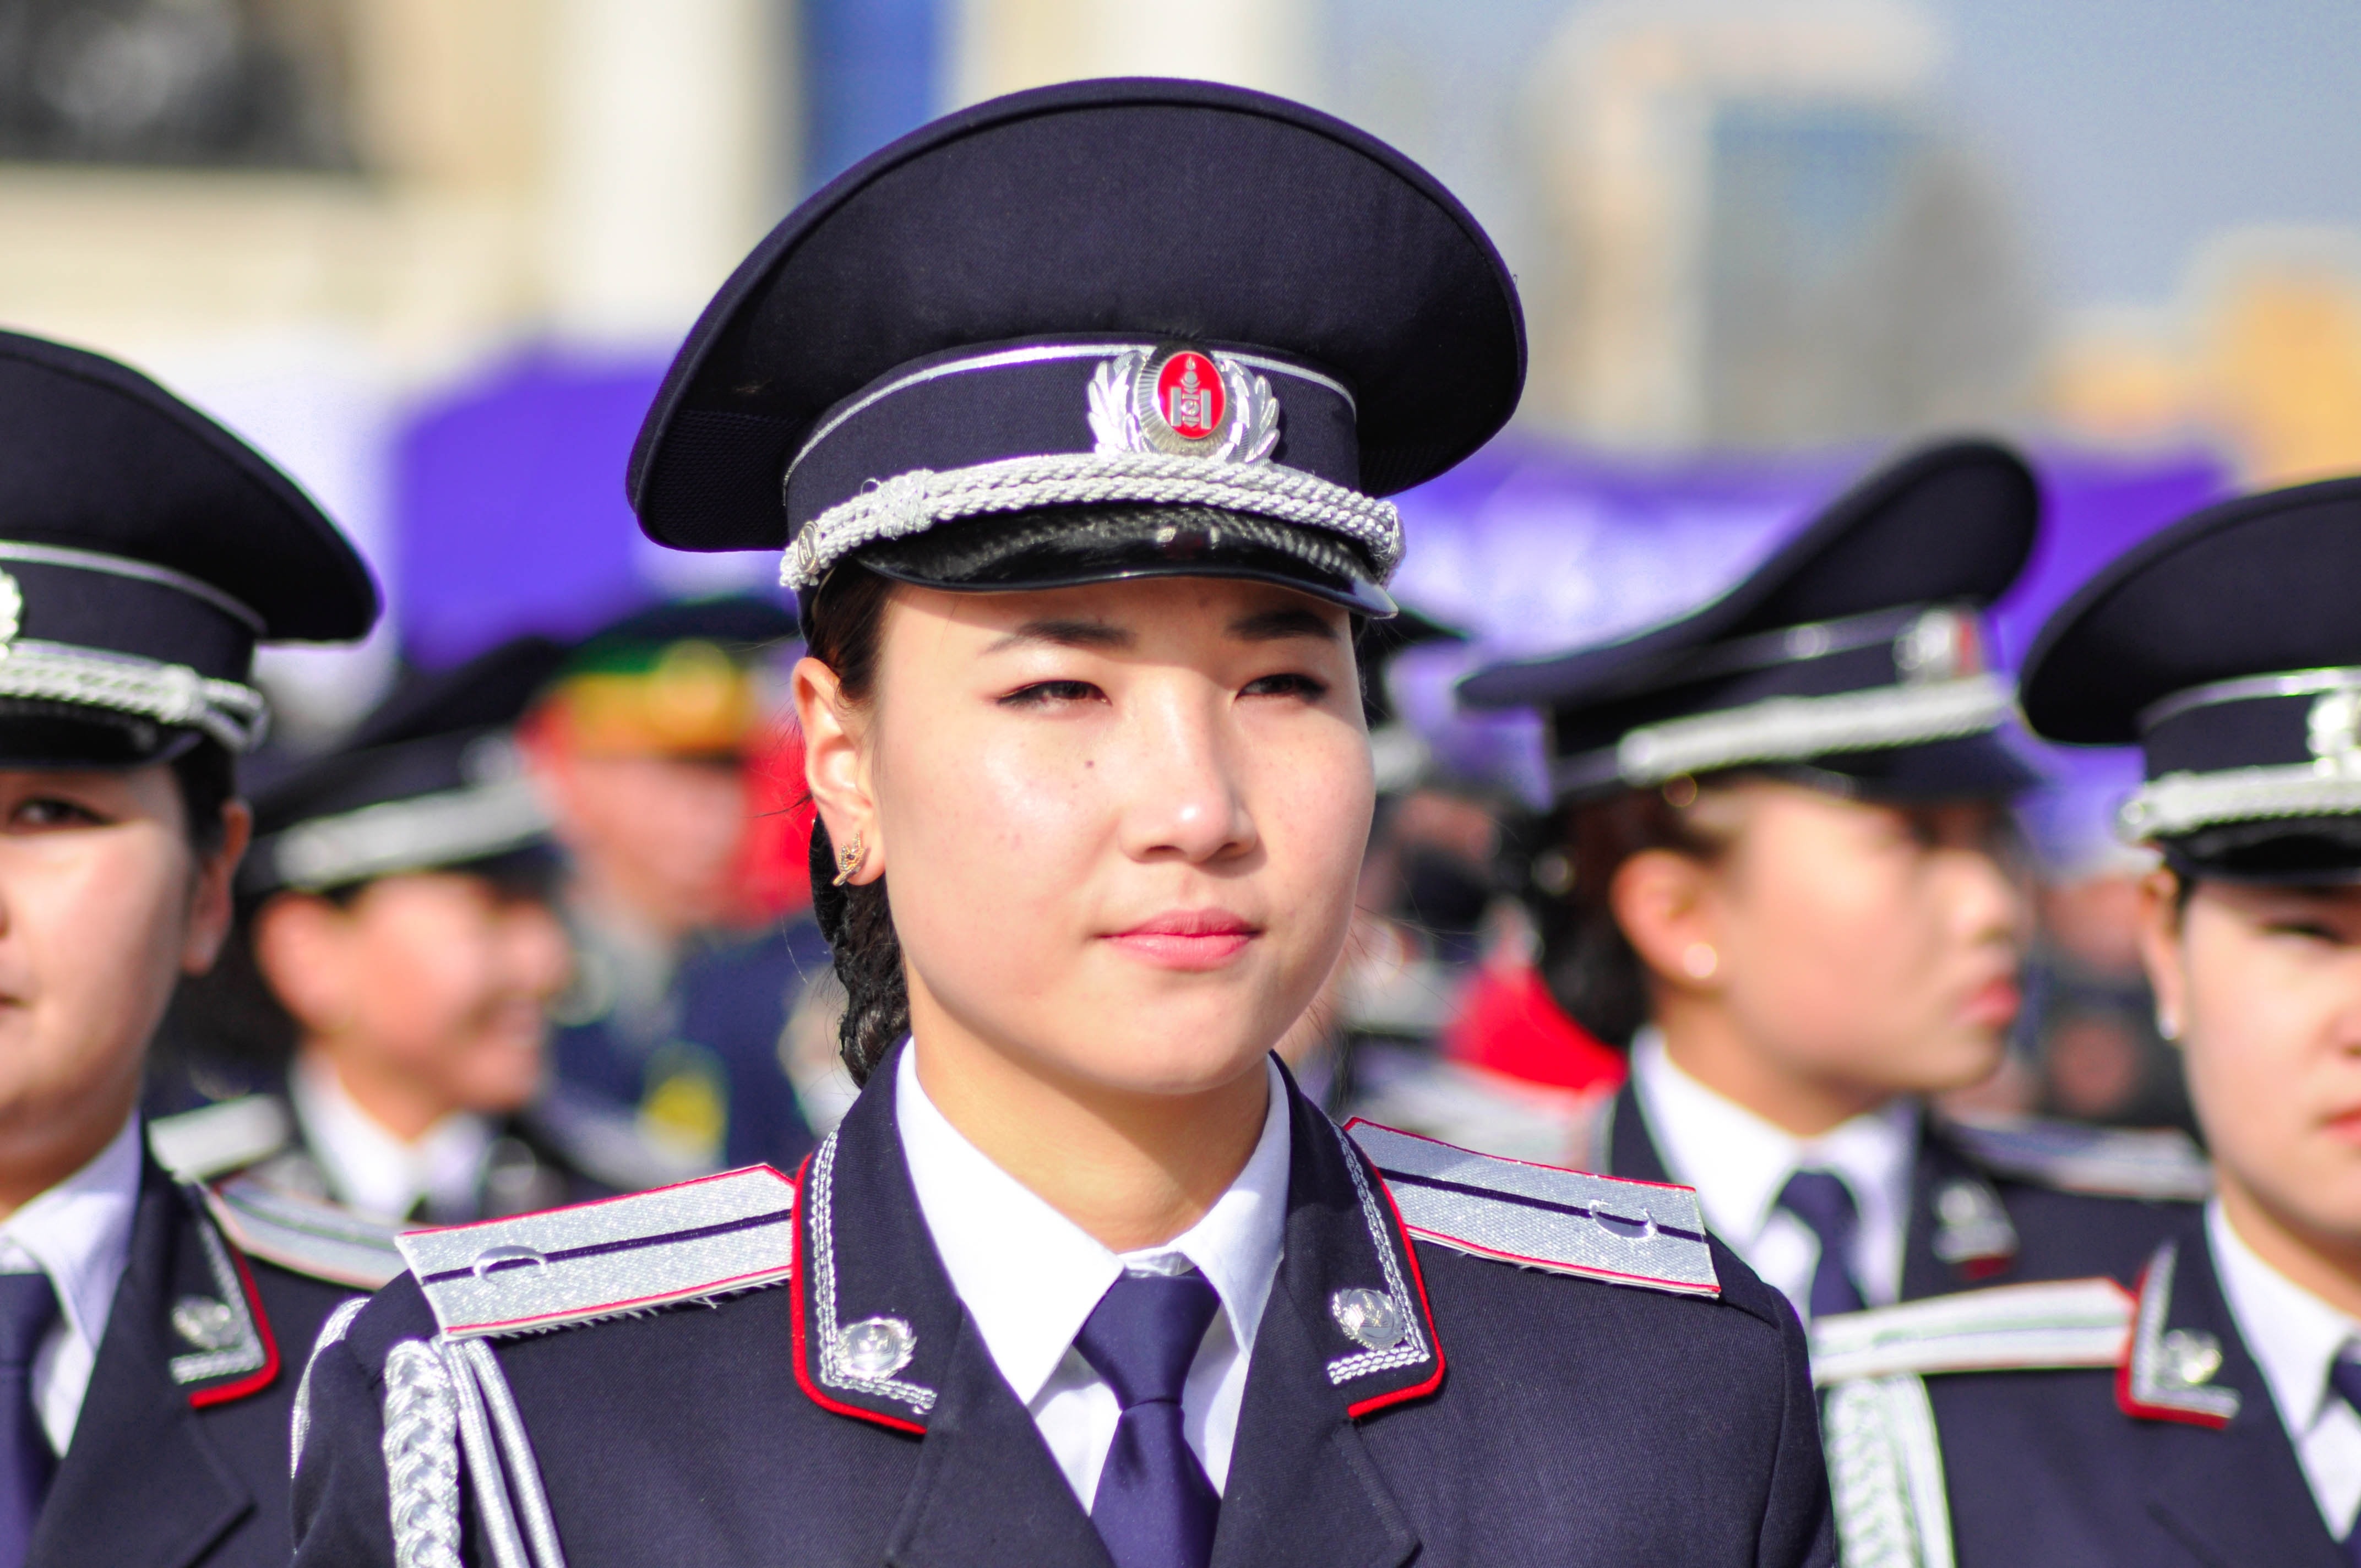 woman wearing police uniform